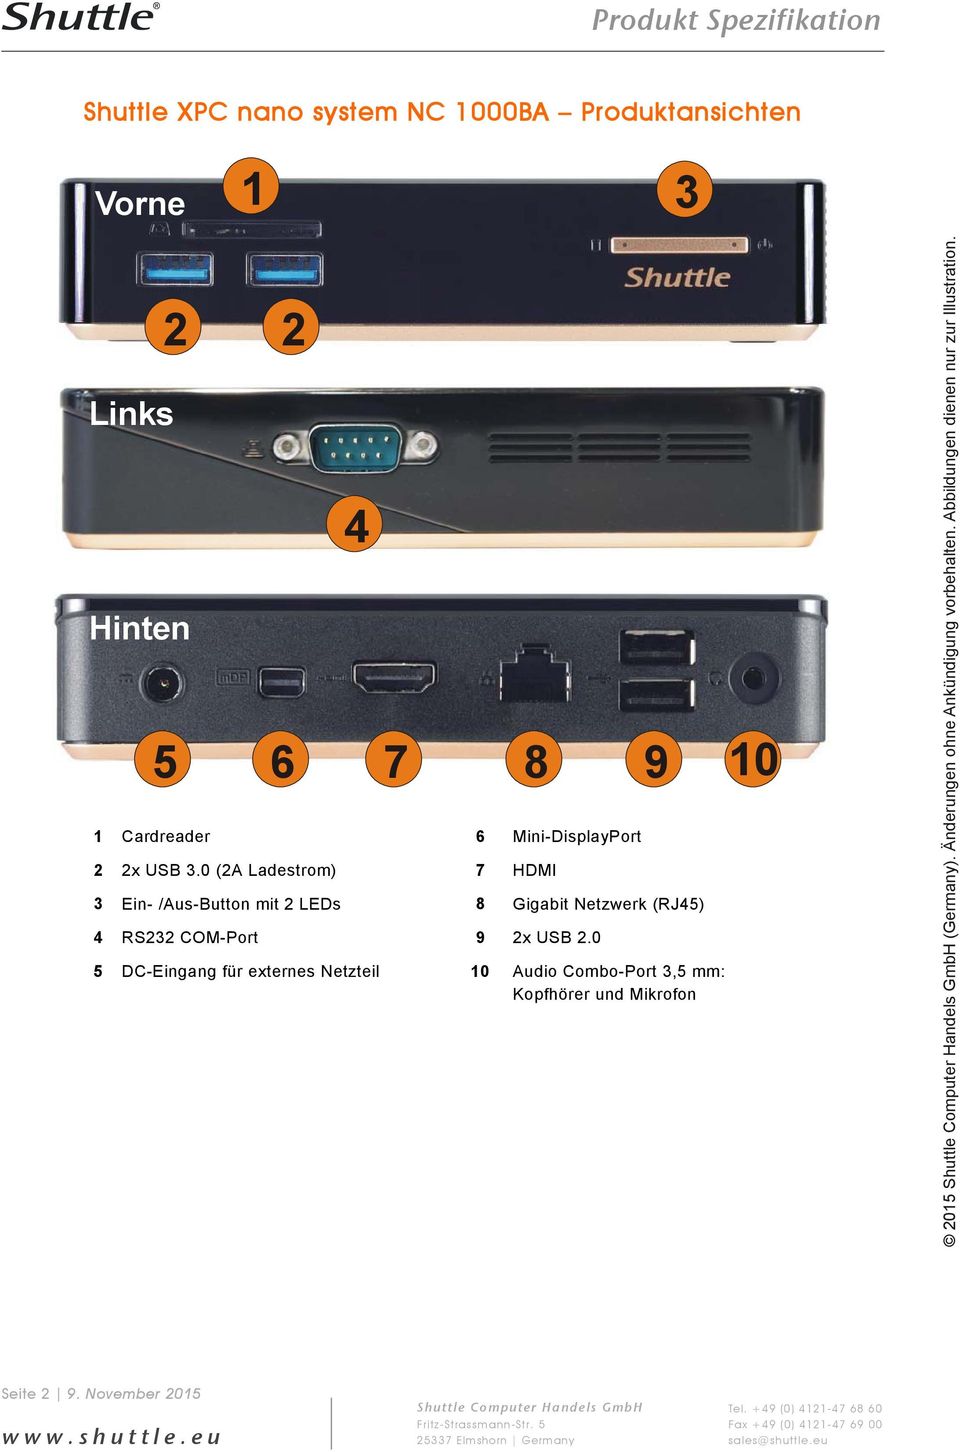 0 (2A Ladestrom) 7 HDMI 3 Ein- /Aus-Button mit 2 LEDs 8 Gigabit Netzwerk (RJ45) 4 RS232 COM-Port 9 2x USB 2.